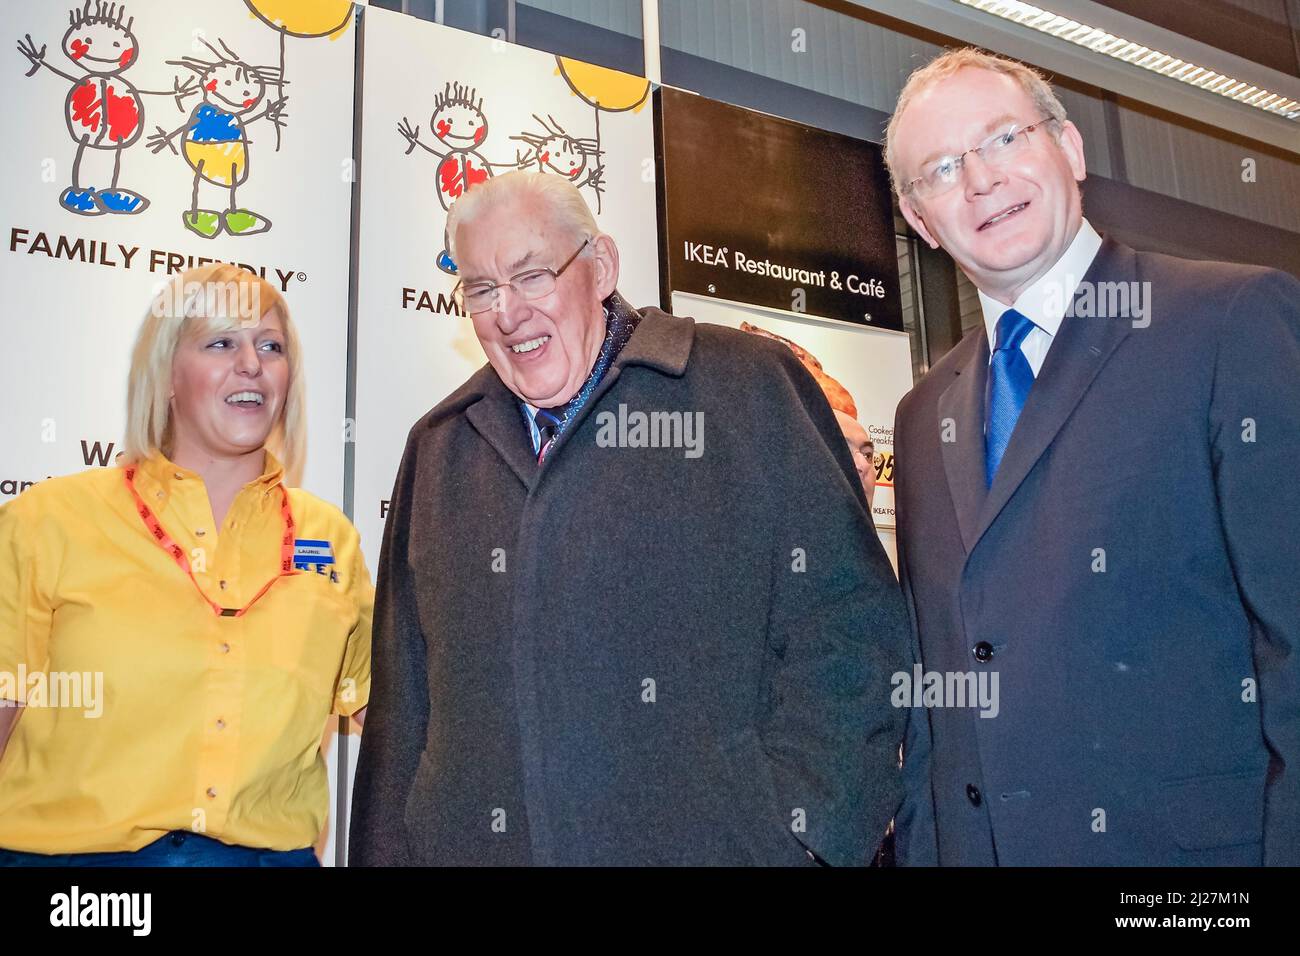 13/12/2007 Belfast, Irlanda del Nord. Il primo Ministro Ian Paisley (DUP) con il Vice primo Ministro Martin McGuinness (Sinn Fein) partecipa all'apertura del negozio Ikea. Foto Stock